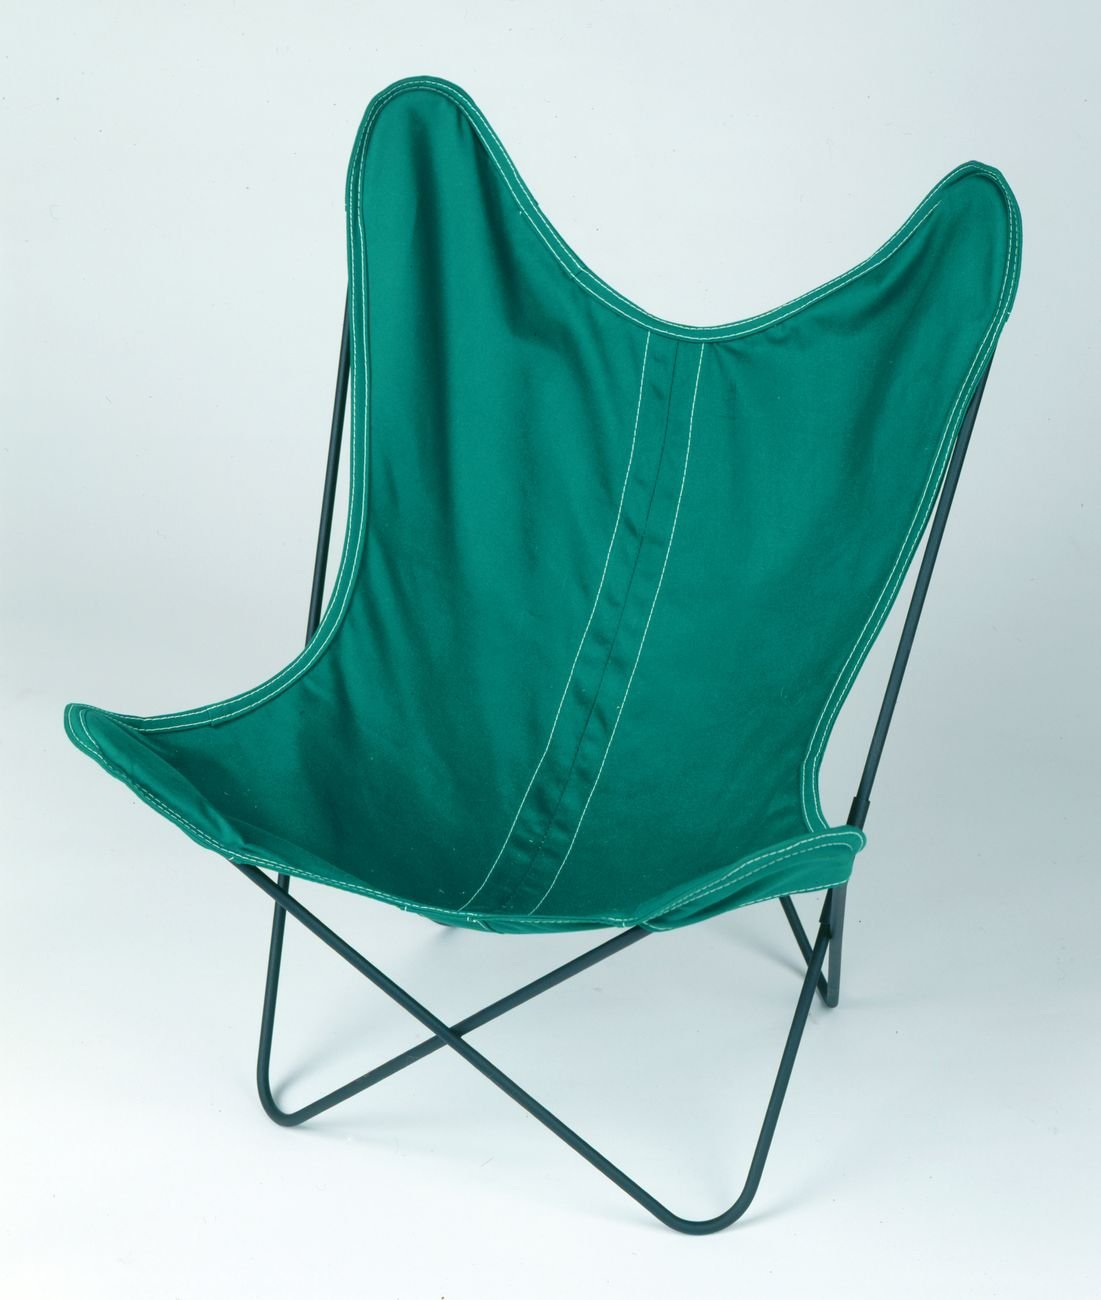 Grupo Austral, Hardoy Chair, 1938, prod. Artek Pascoe. Collection MAMC+. Photo © Yves Bresson MAMC+